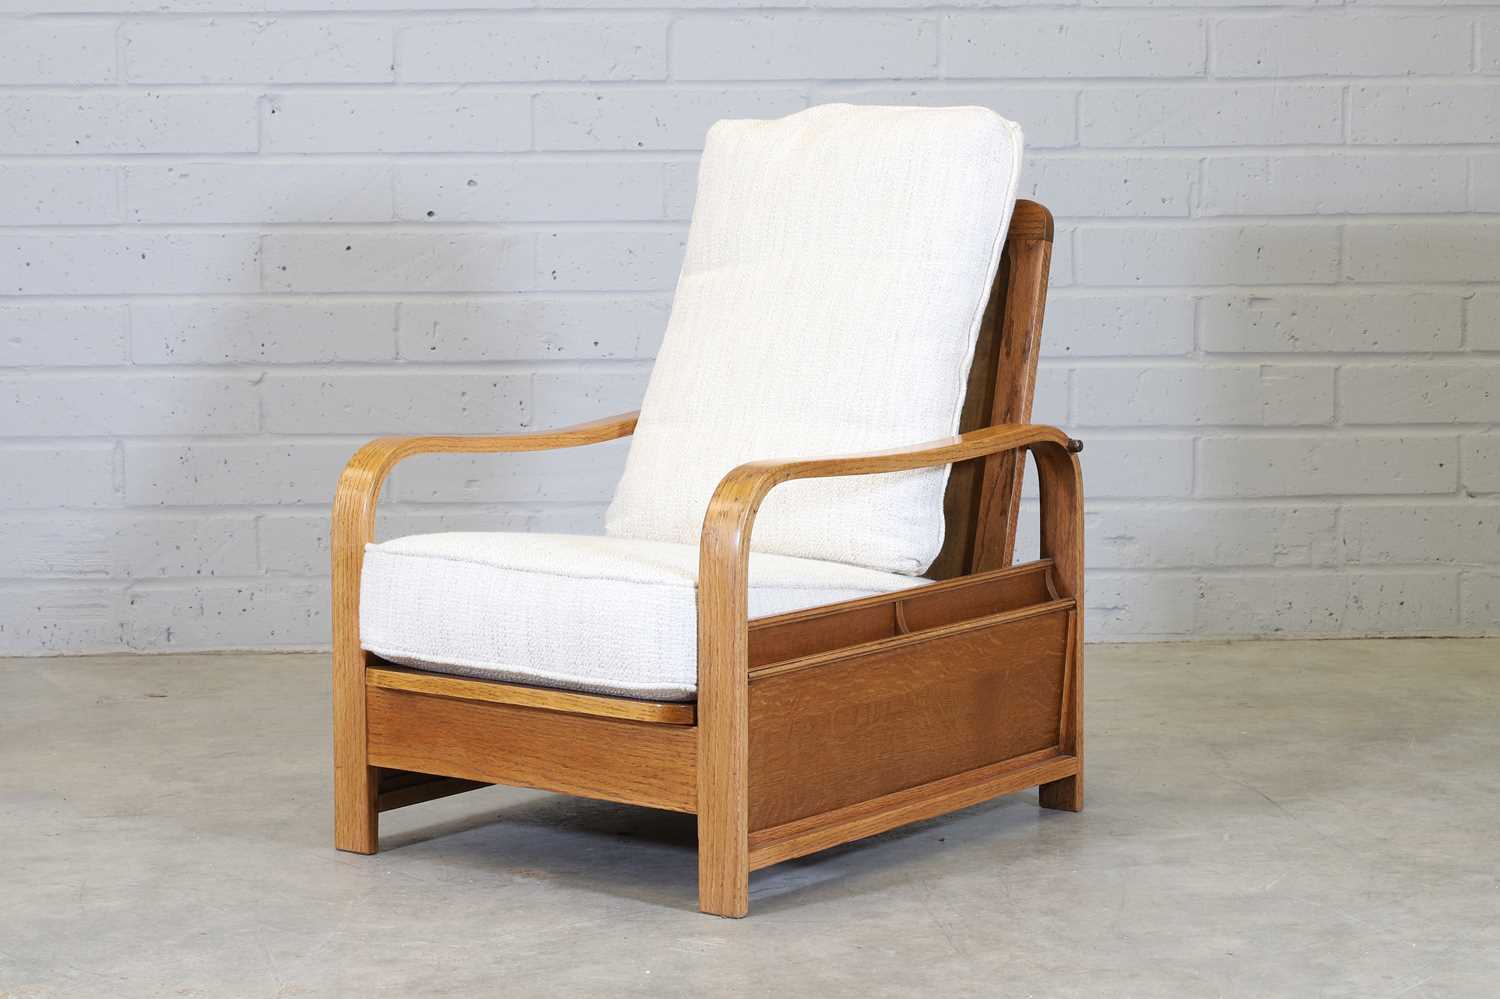 Lot 39 - An oak reclining reading chair